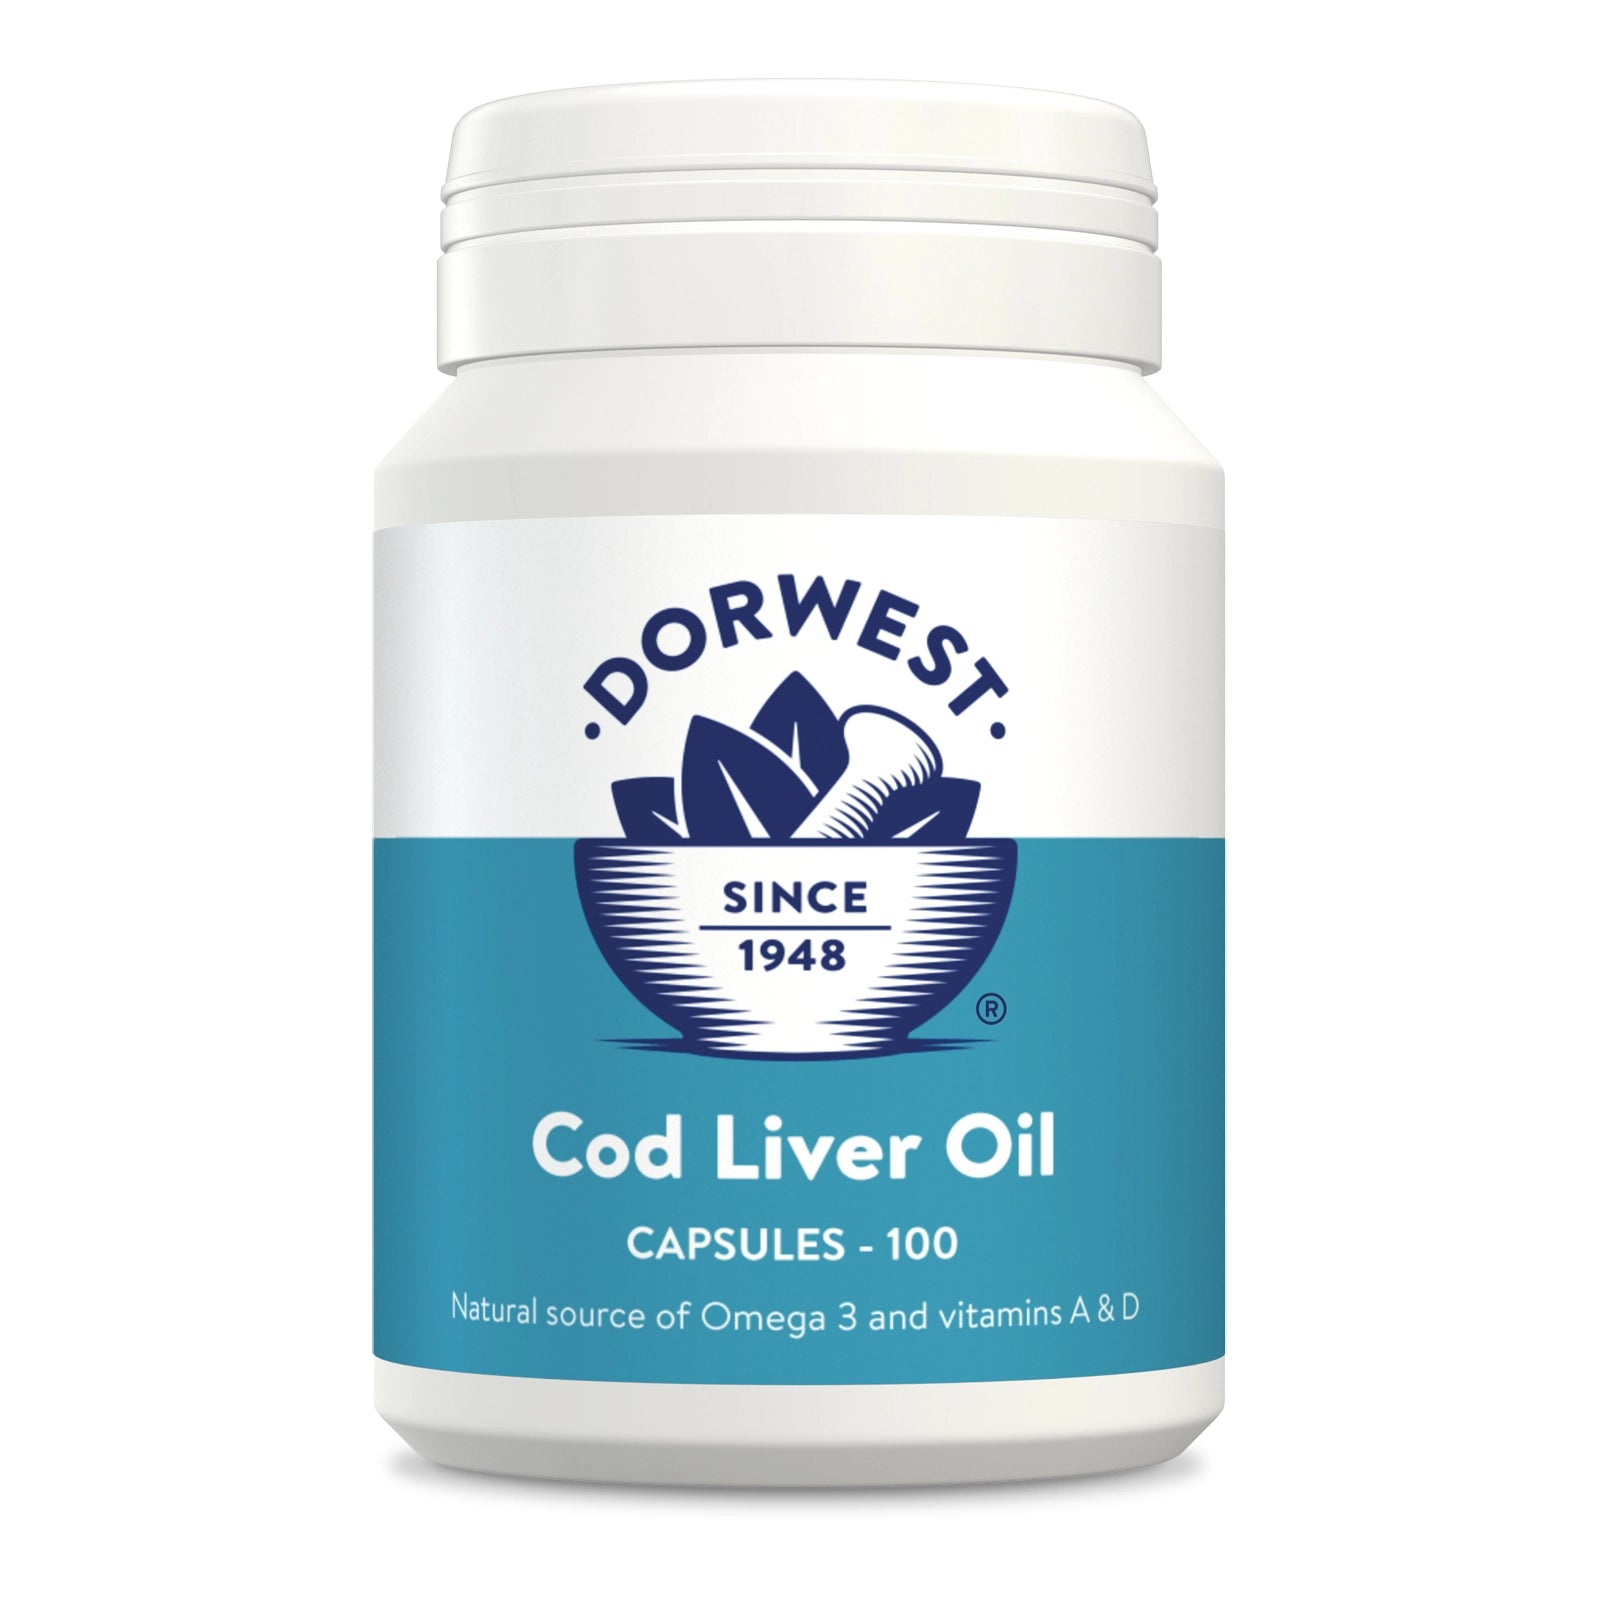 Dorwest Cod Liver Oil